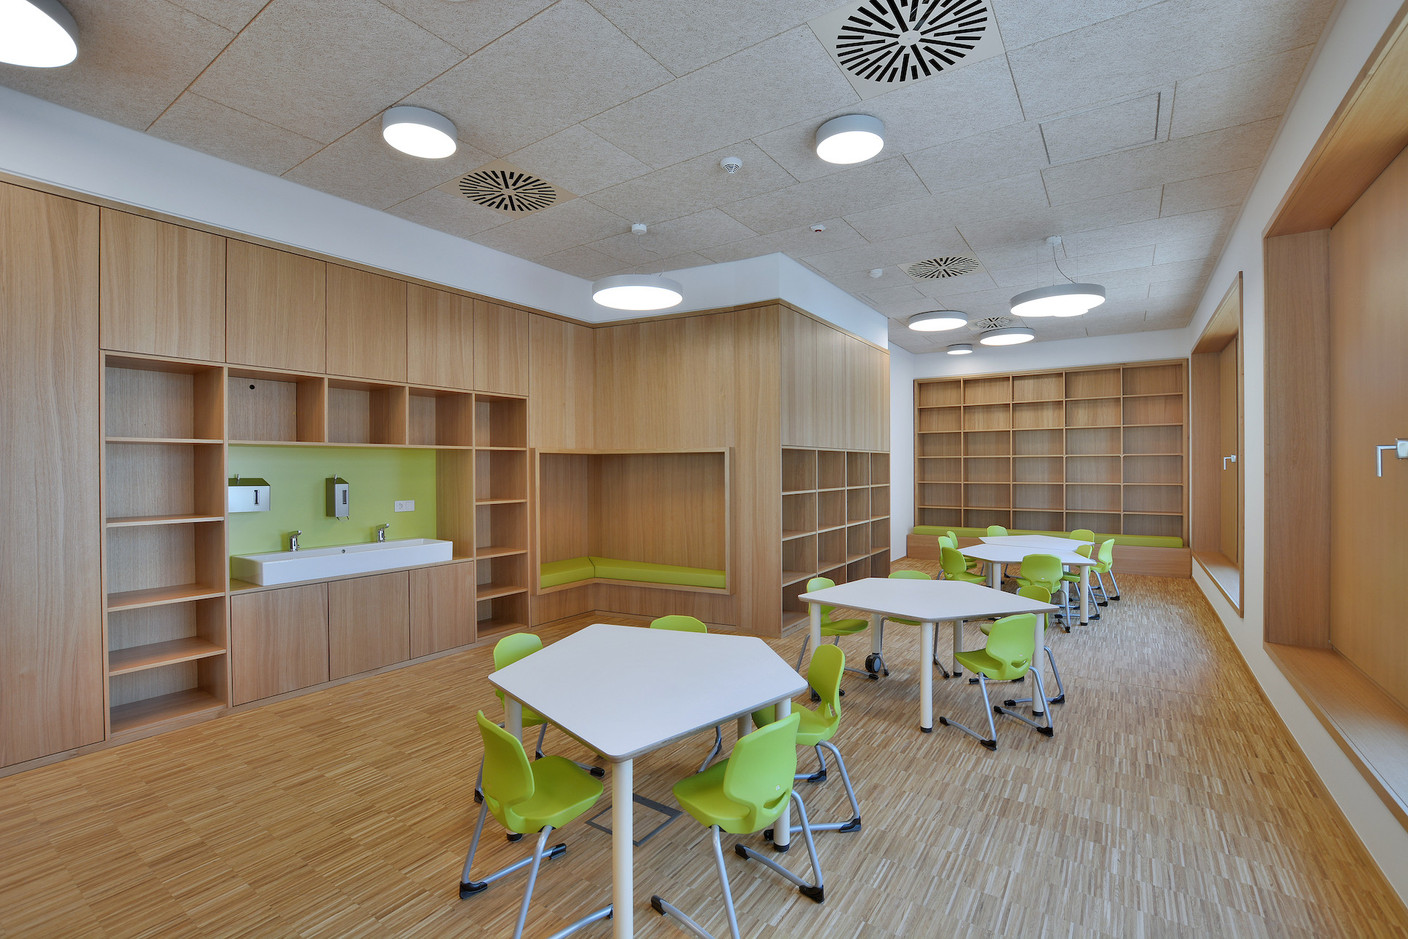 Les salles sont aménagées pour être utilisées indifféremment par l’école ou par le foyer scolaire. (Photo: Agence Kapture)